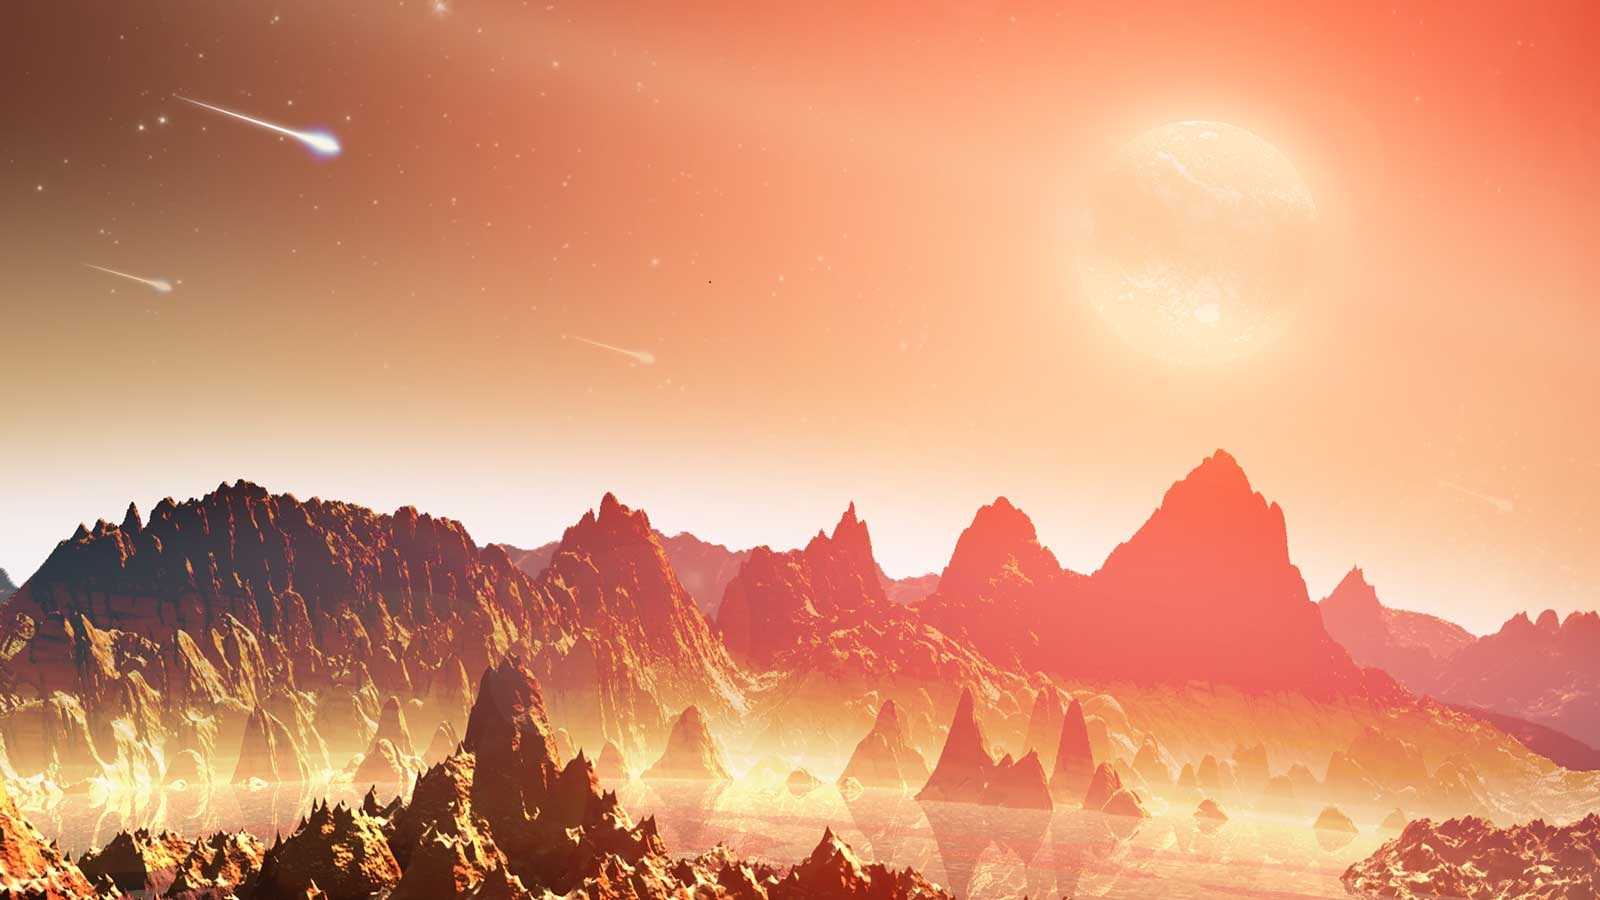 Penemuan Exoplanet Ungkap Manusia Harus Siap Menyambut Kedatangan Bumi yang Baru